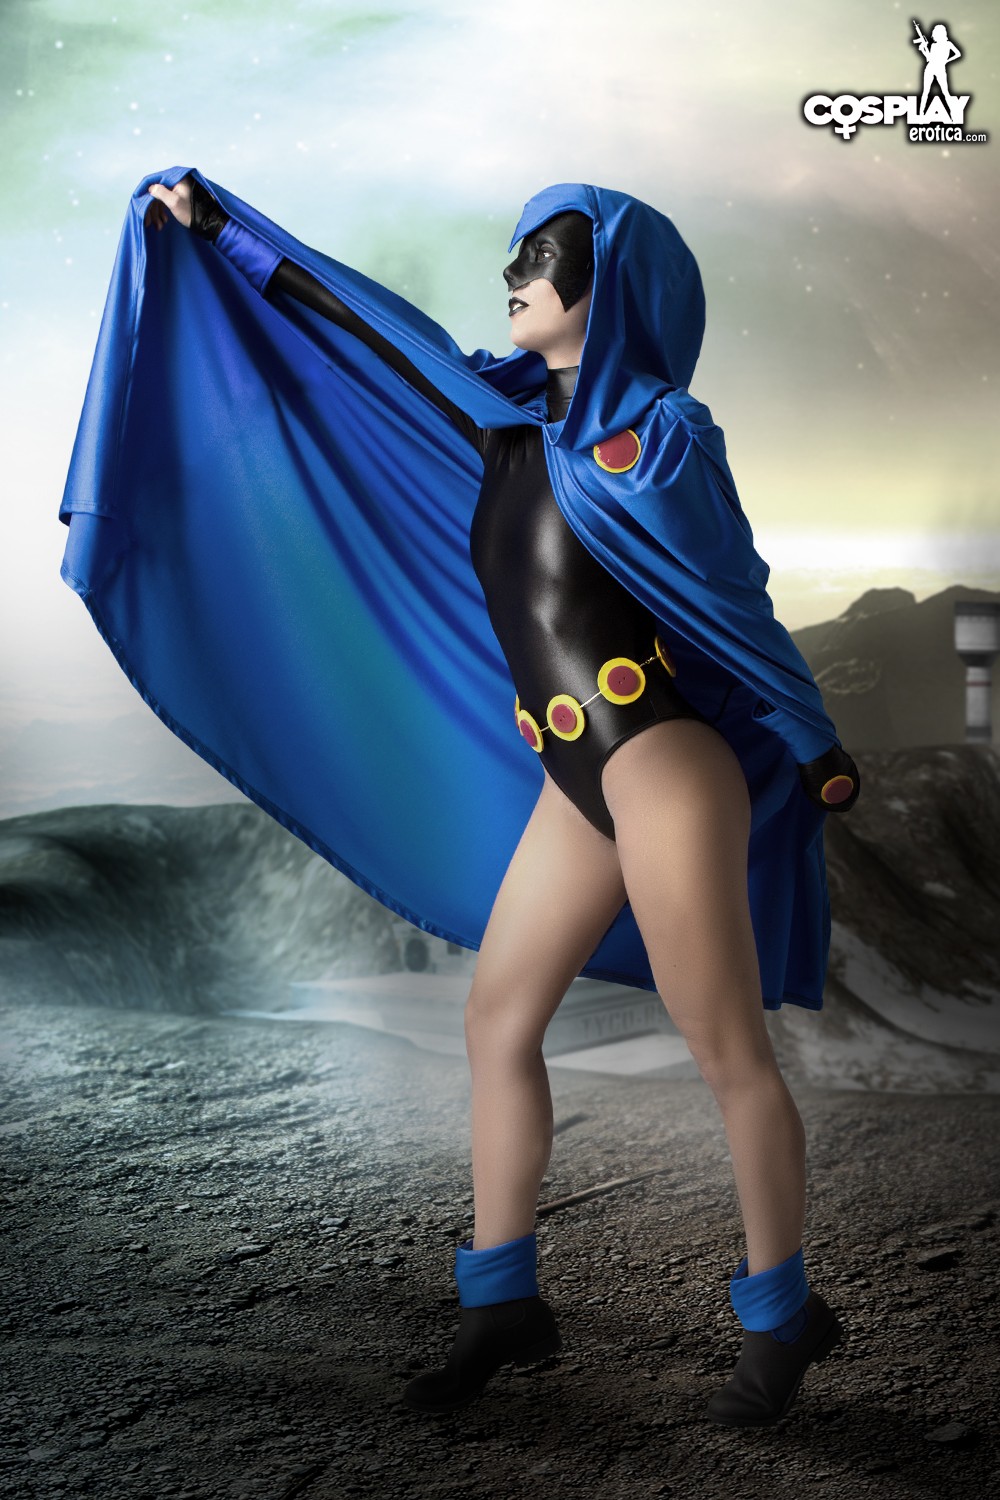 Raven nude cosplay